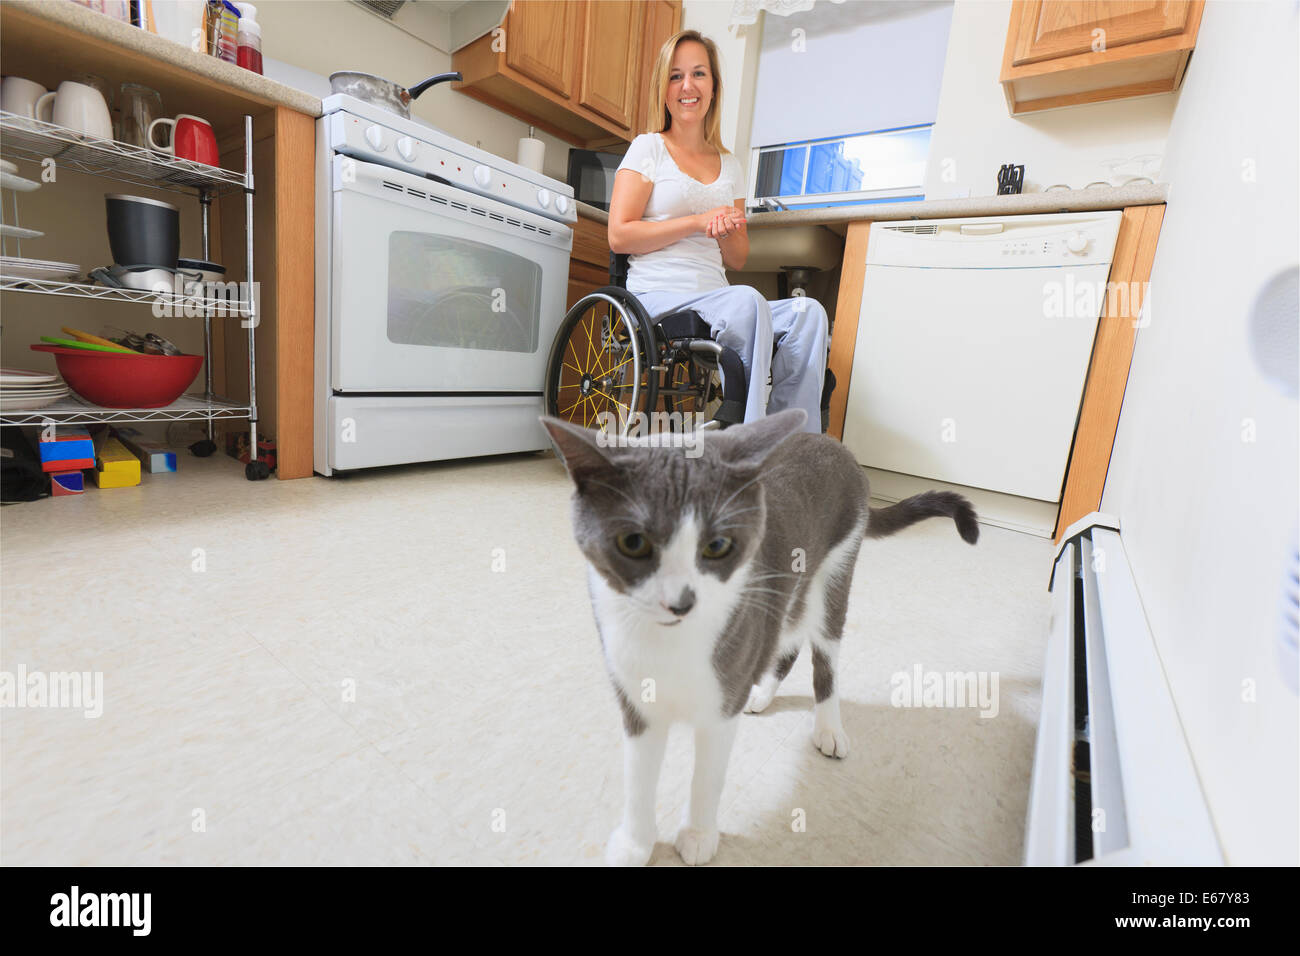 Femme avec de la moelle épinière dans sa cuisine accessible à la recherche à un chat Banque D'Images